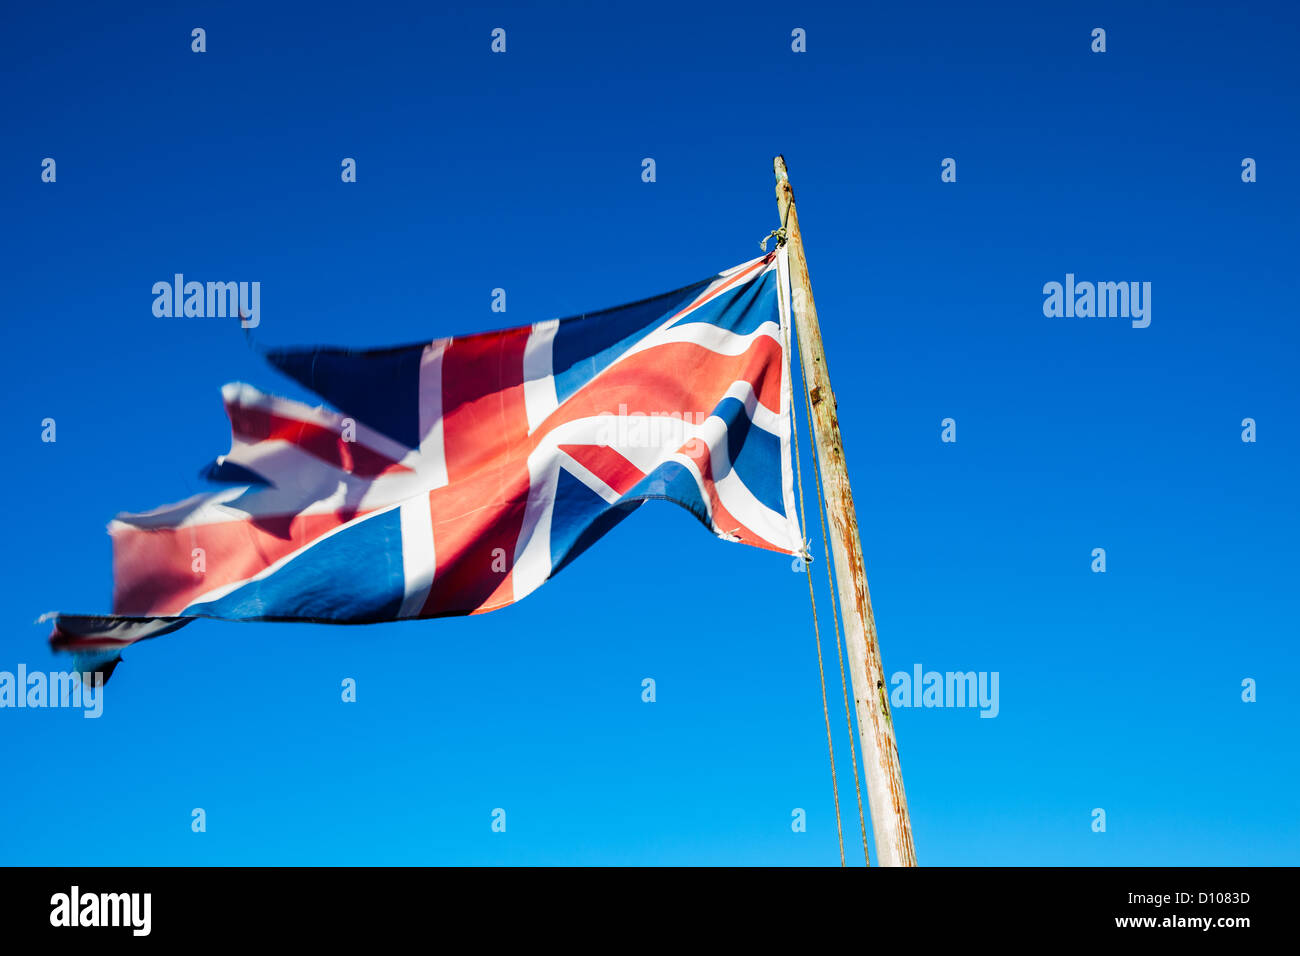 Déchiré en lambeaux, et négligées, Union Jack, le drapeau britannique, sur un mât contre un ciel bleu clair. Banque D'Images